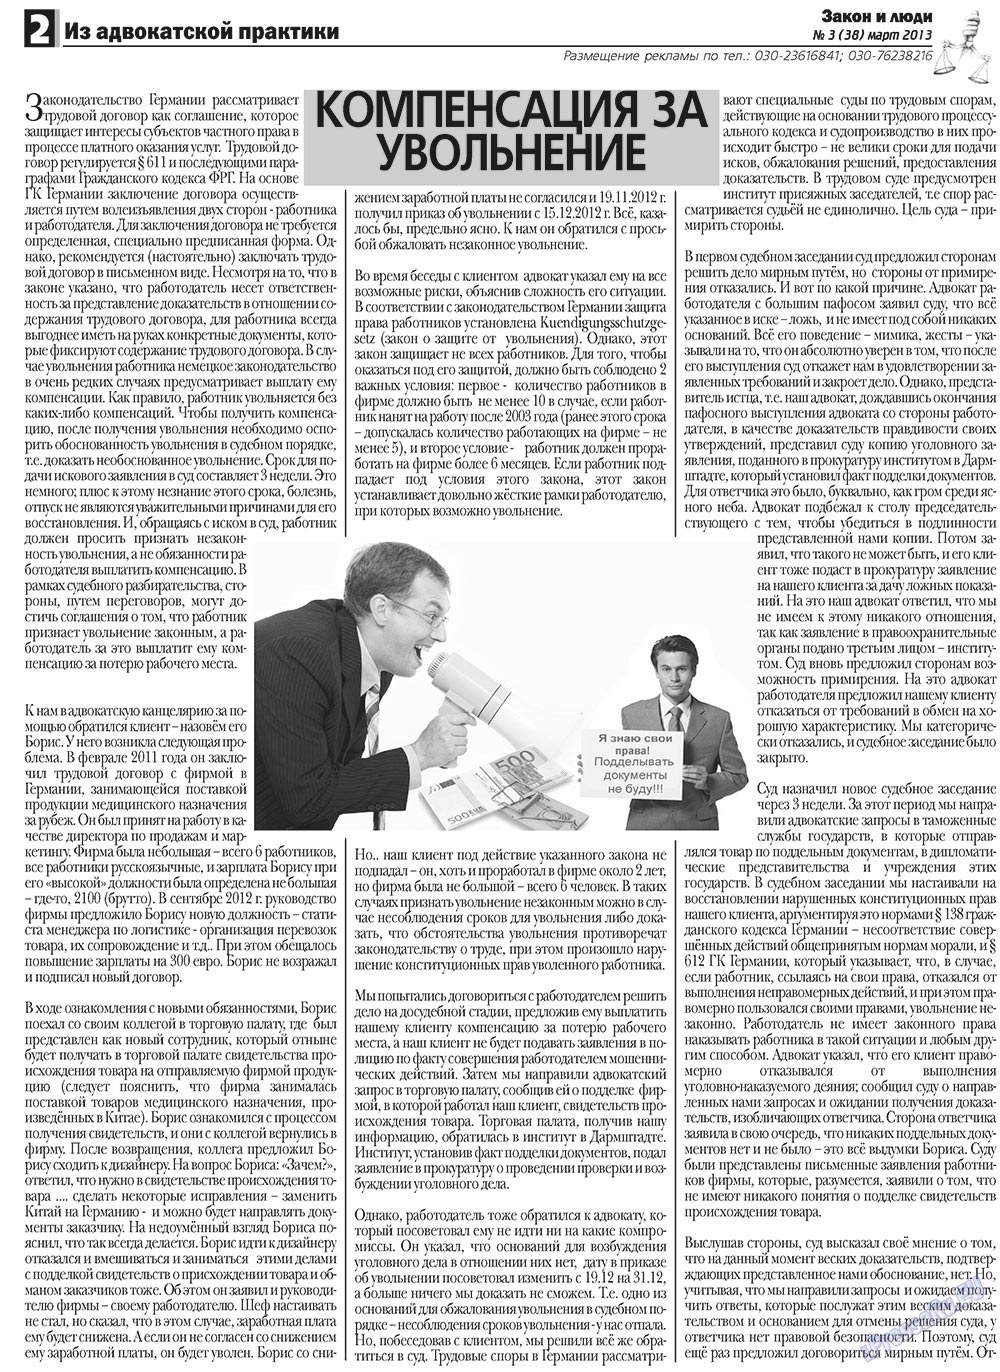 Закон и люди (газета). 2013 год, номер 3, стр. 2